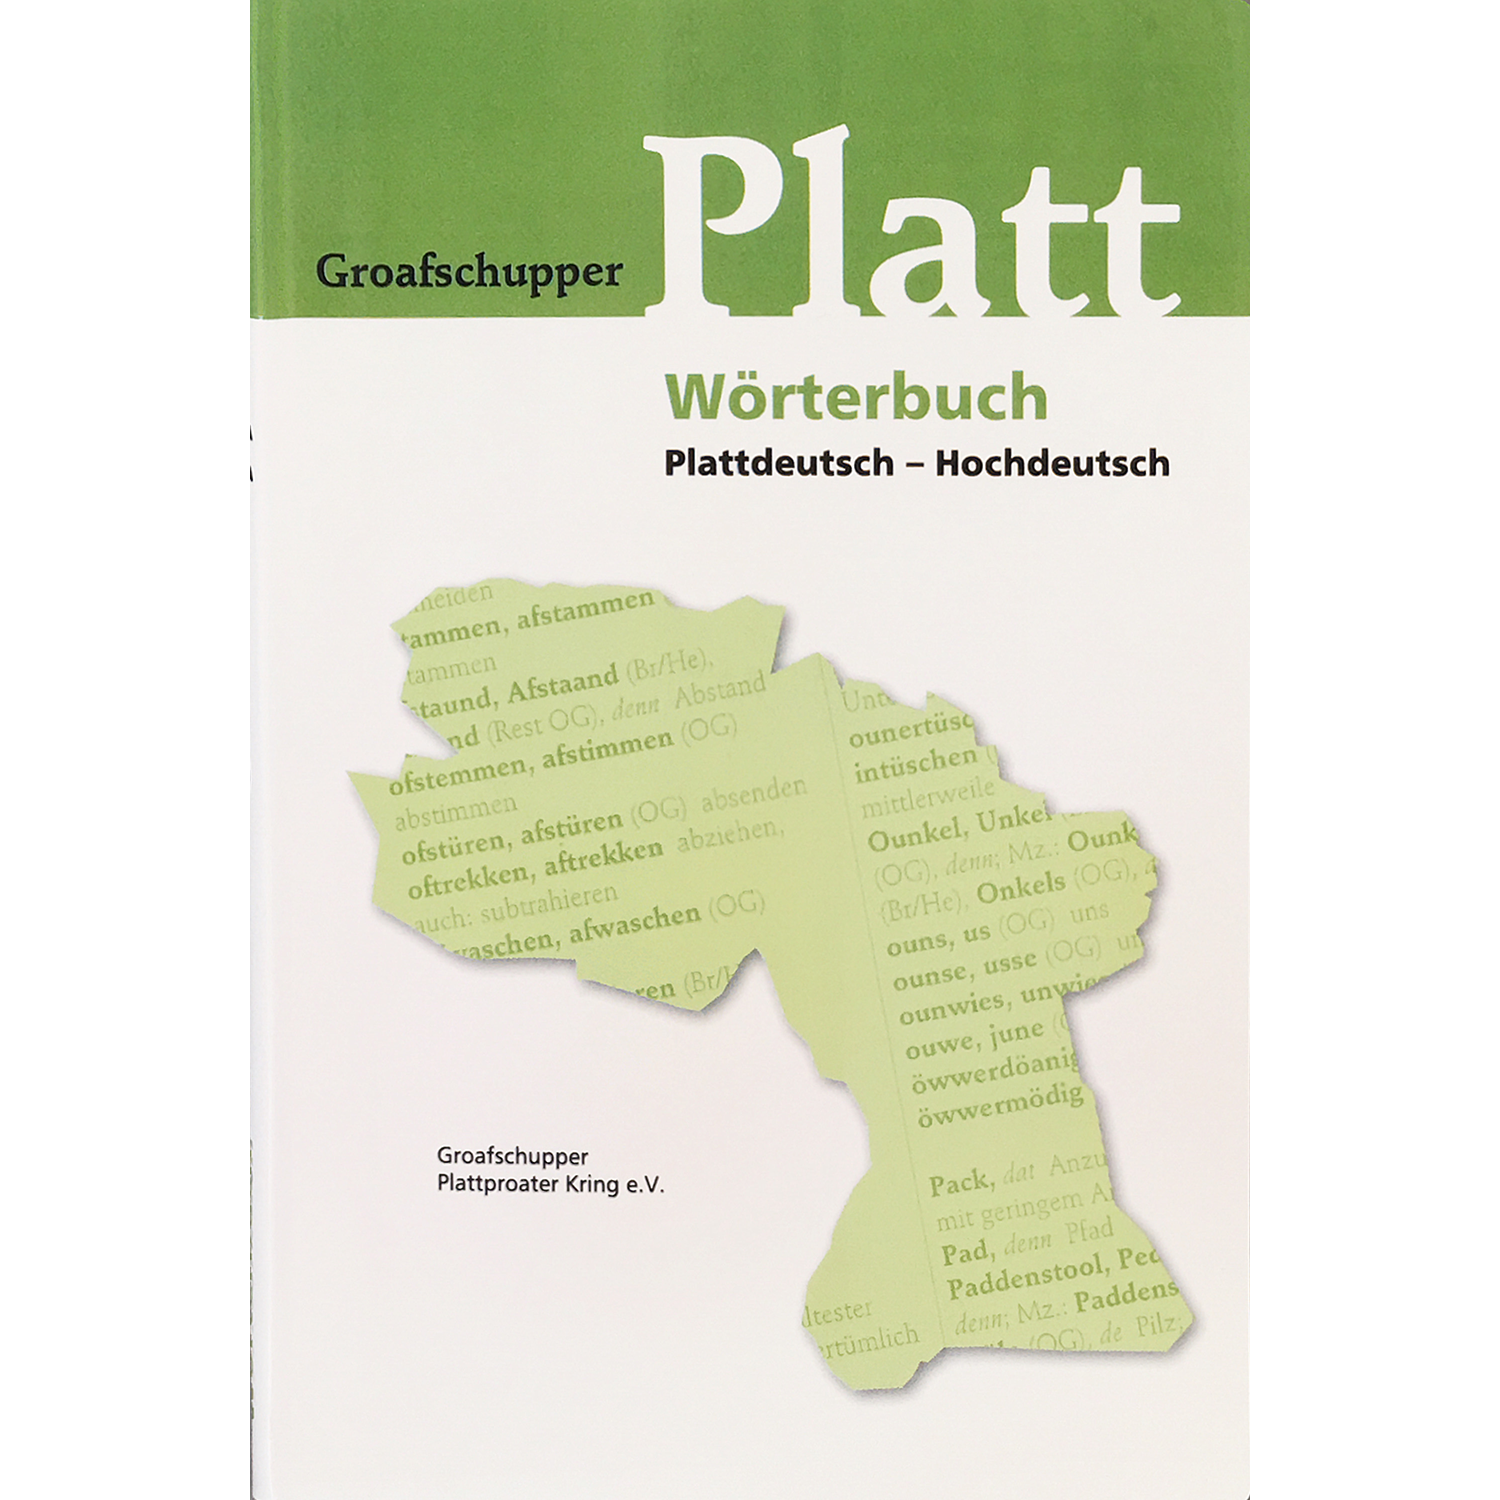 groafschupper-platt-w-rterbuch-plattdeutsch-hochdeutsch